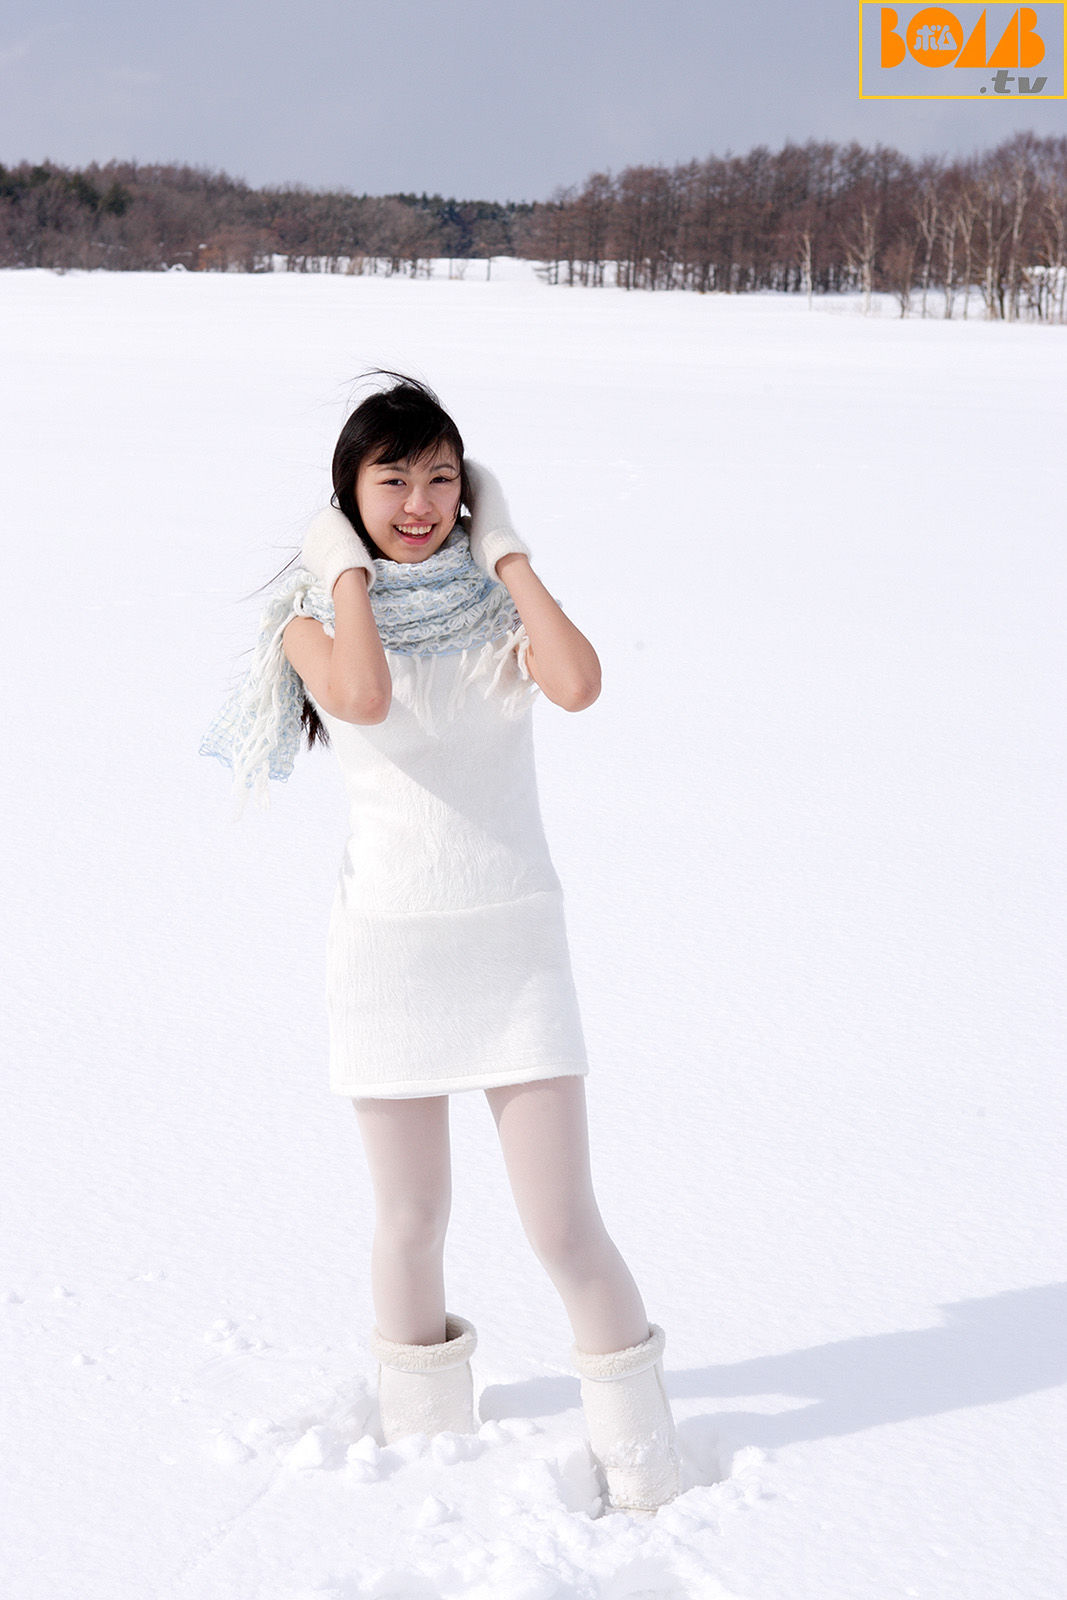 彩月贵央 雪地写真美丽冻人 5月7日~照写真了 (点击浏览下一张趣图)